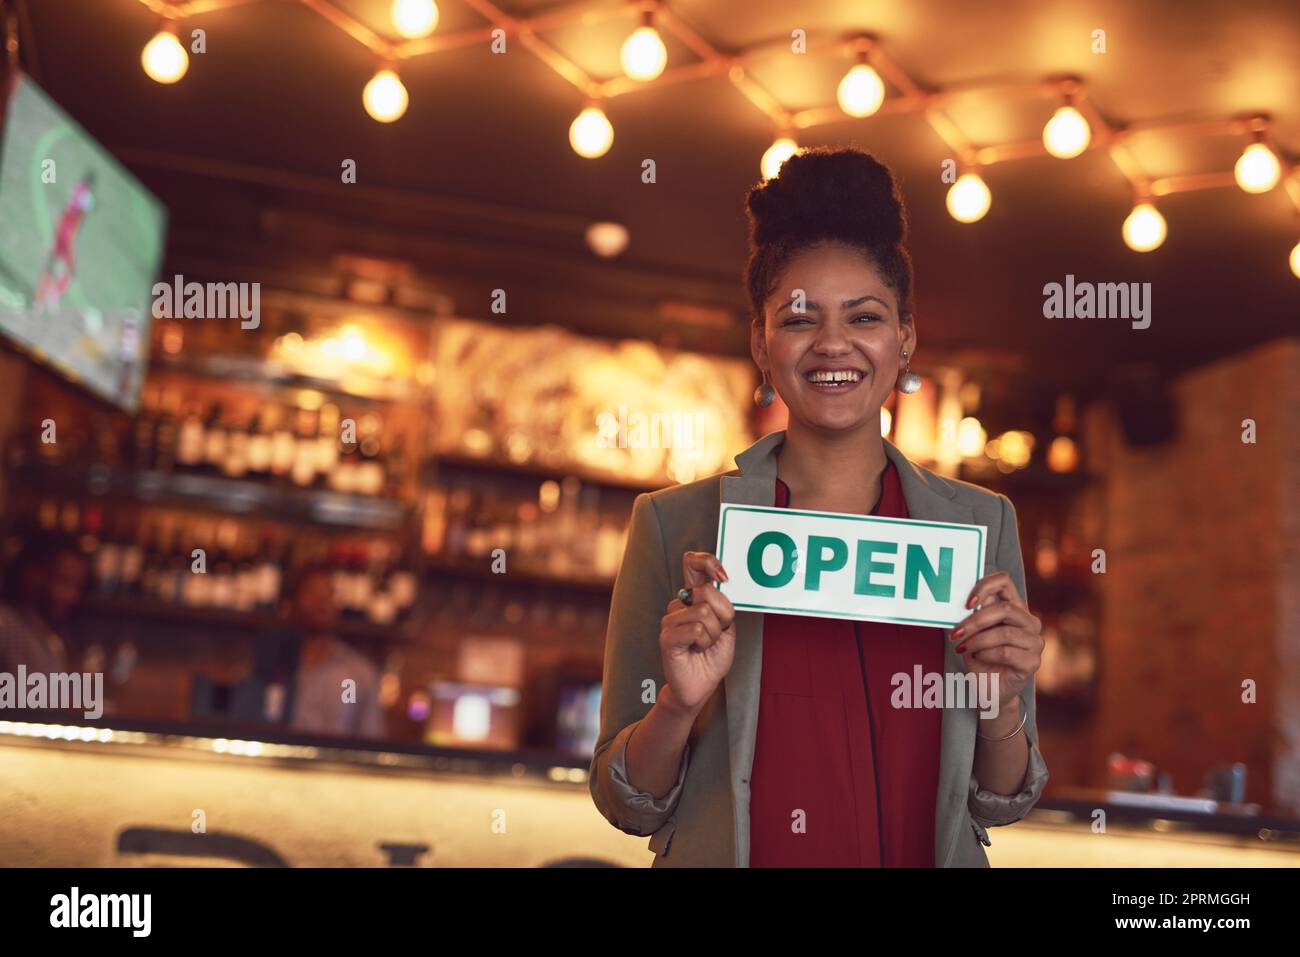 Willkommen im besten Café der Stadt. Porträt einer jungen Geschäftsbesitzerin, die ein offenes Schild in ihrem Café hält. Stockfoto